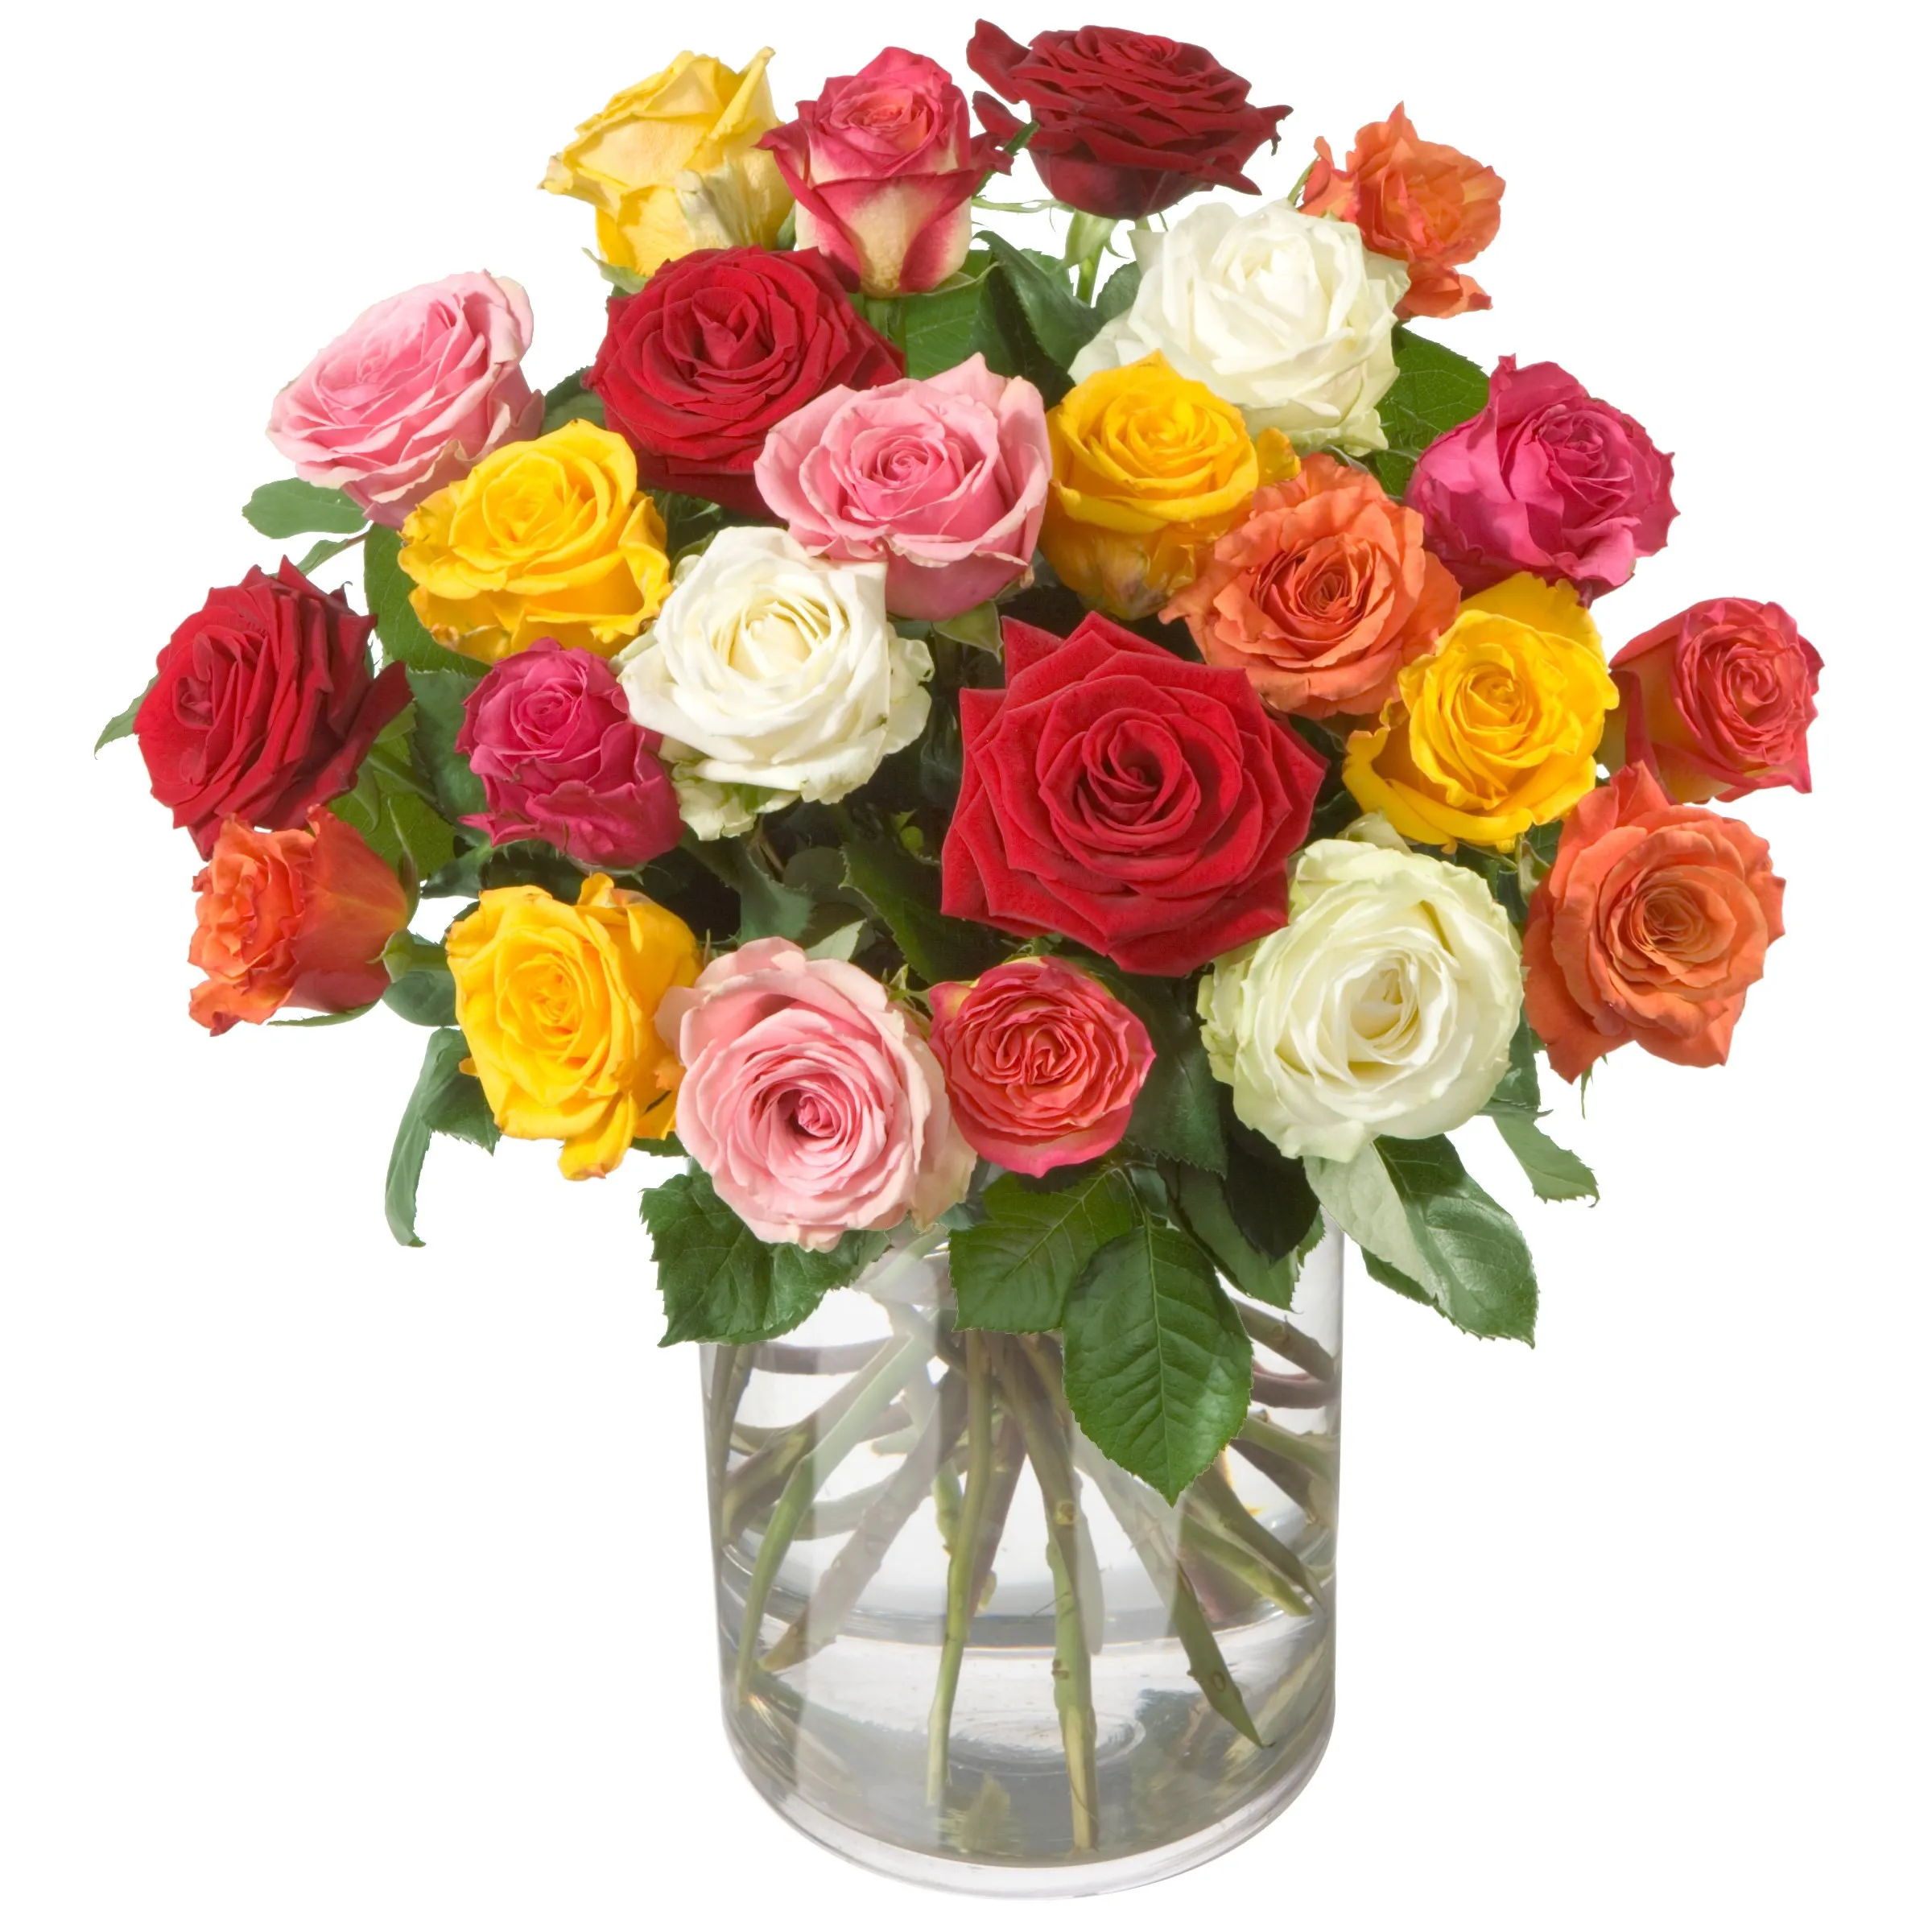 Allure - Colorful Roses - Georgia